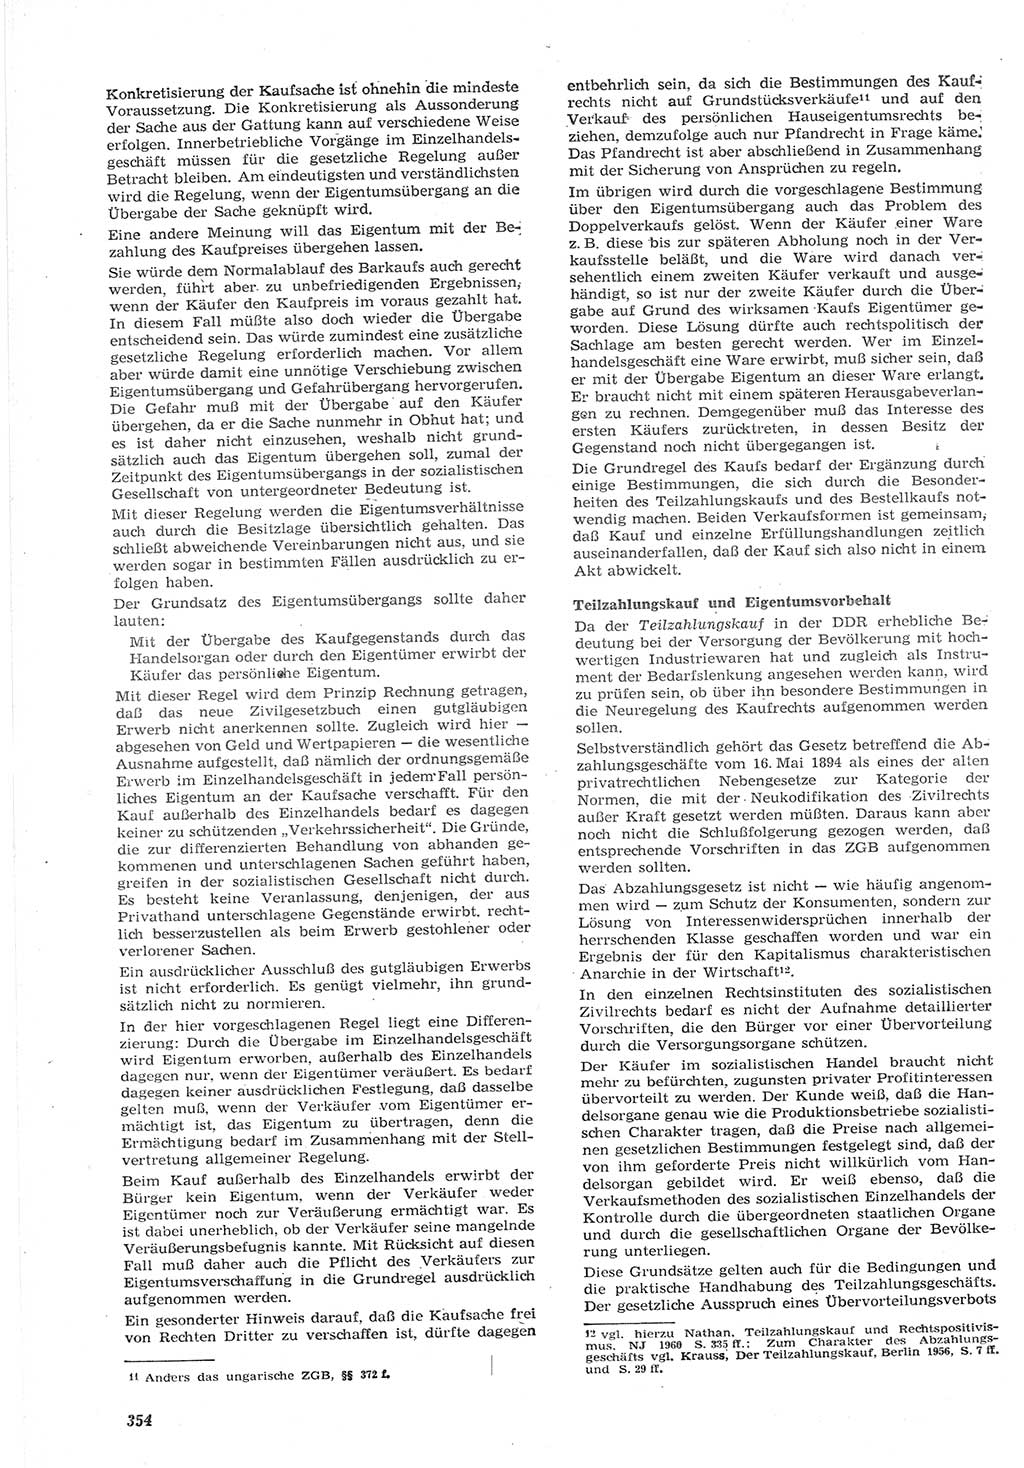 Neue Justiz (NJ), Zeitschrift für Recht und Rechtswissenschaft [Deutsche Demokratische Republik (DDR)], 15. Jahrgang 1961, Seite 354 (NJ DDR 1961, S. 354)